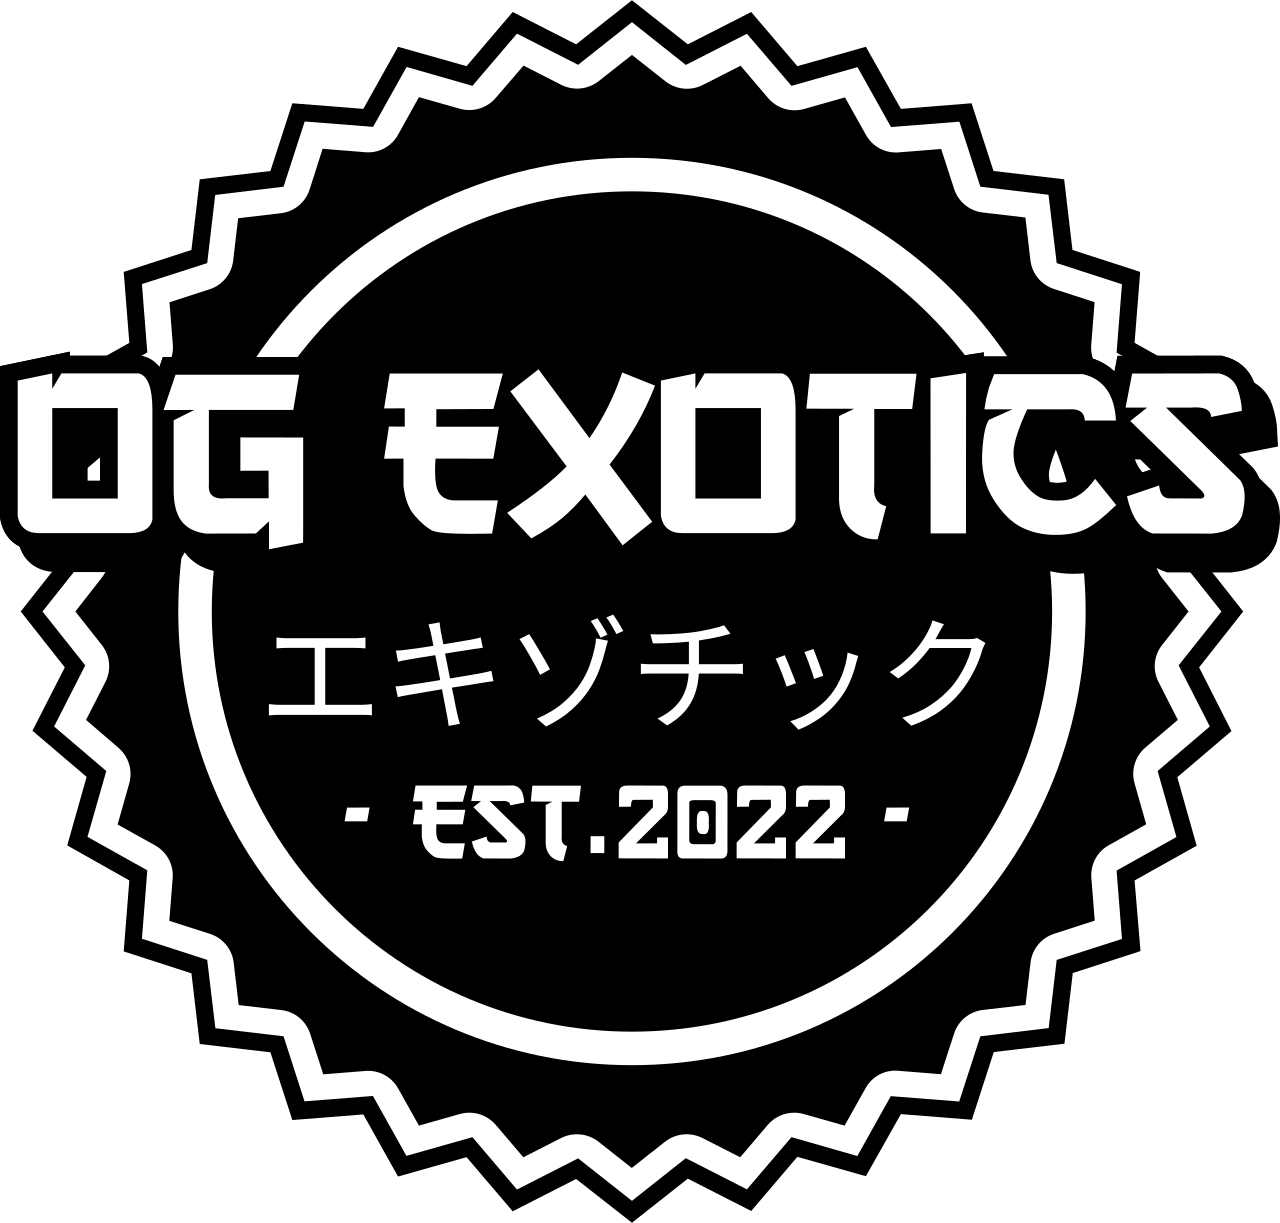 OG Exotics's web page